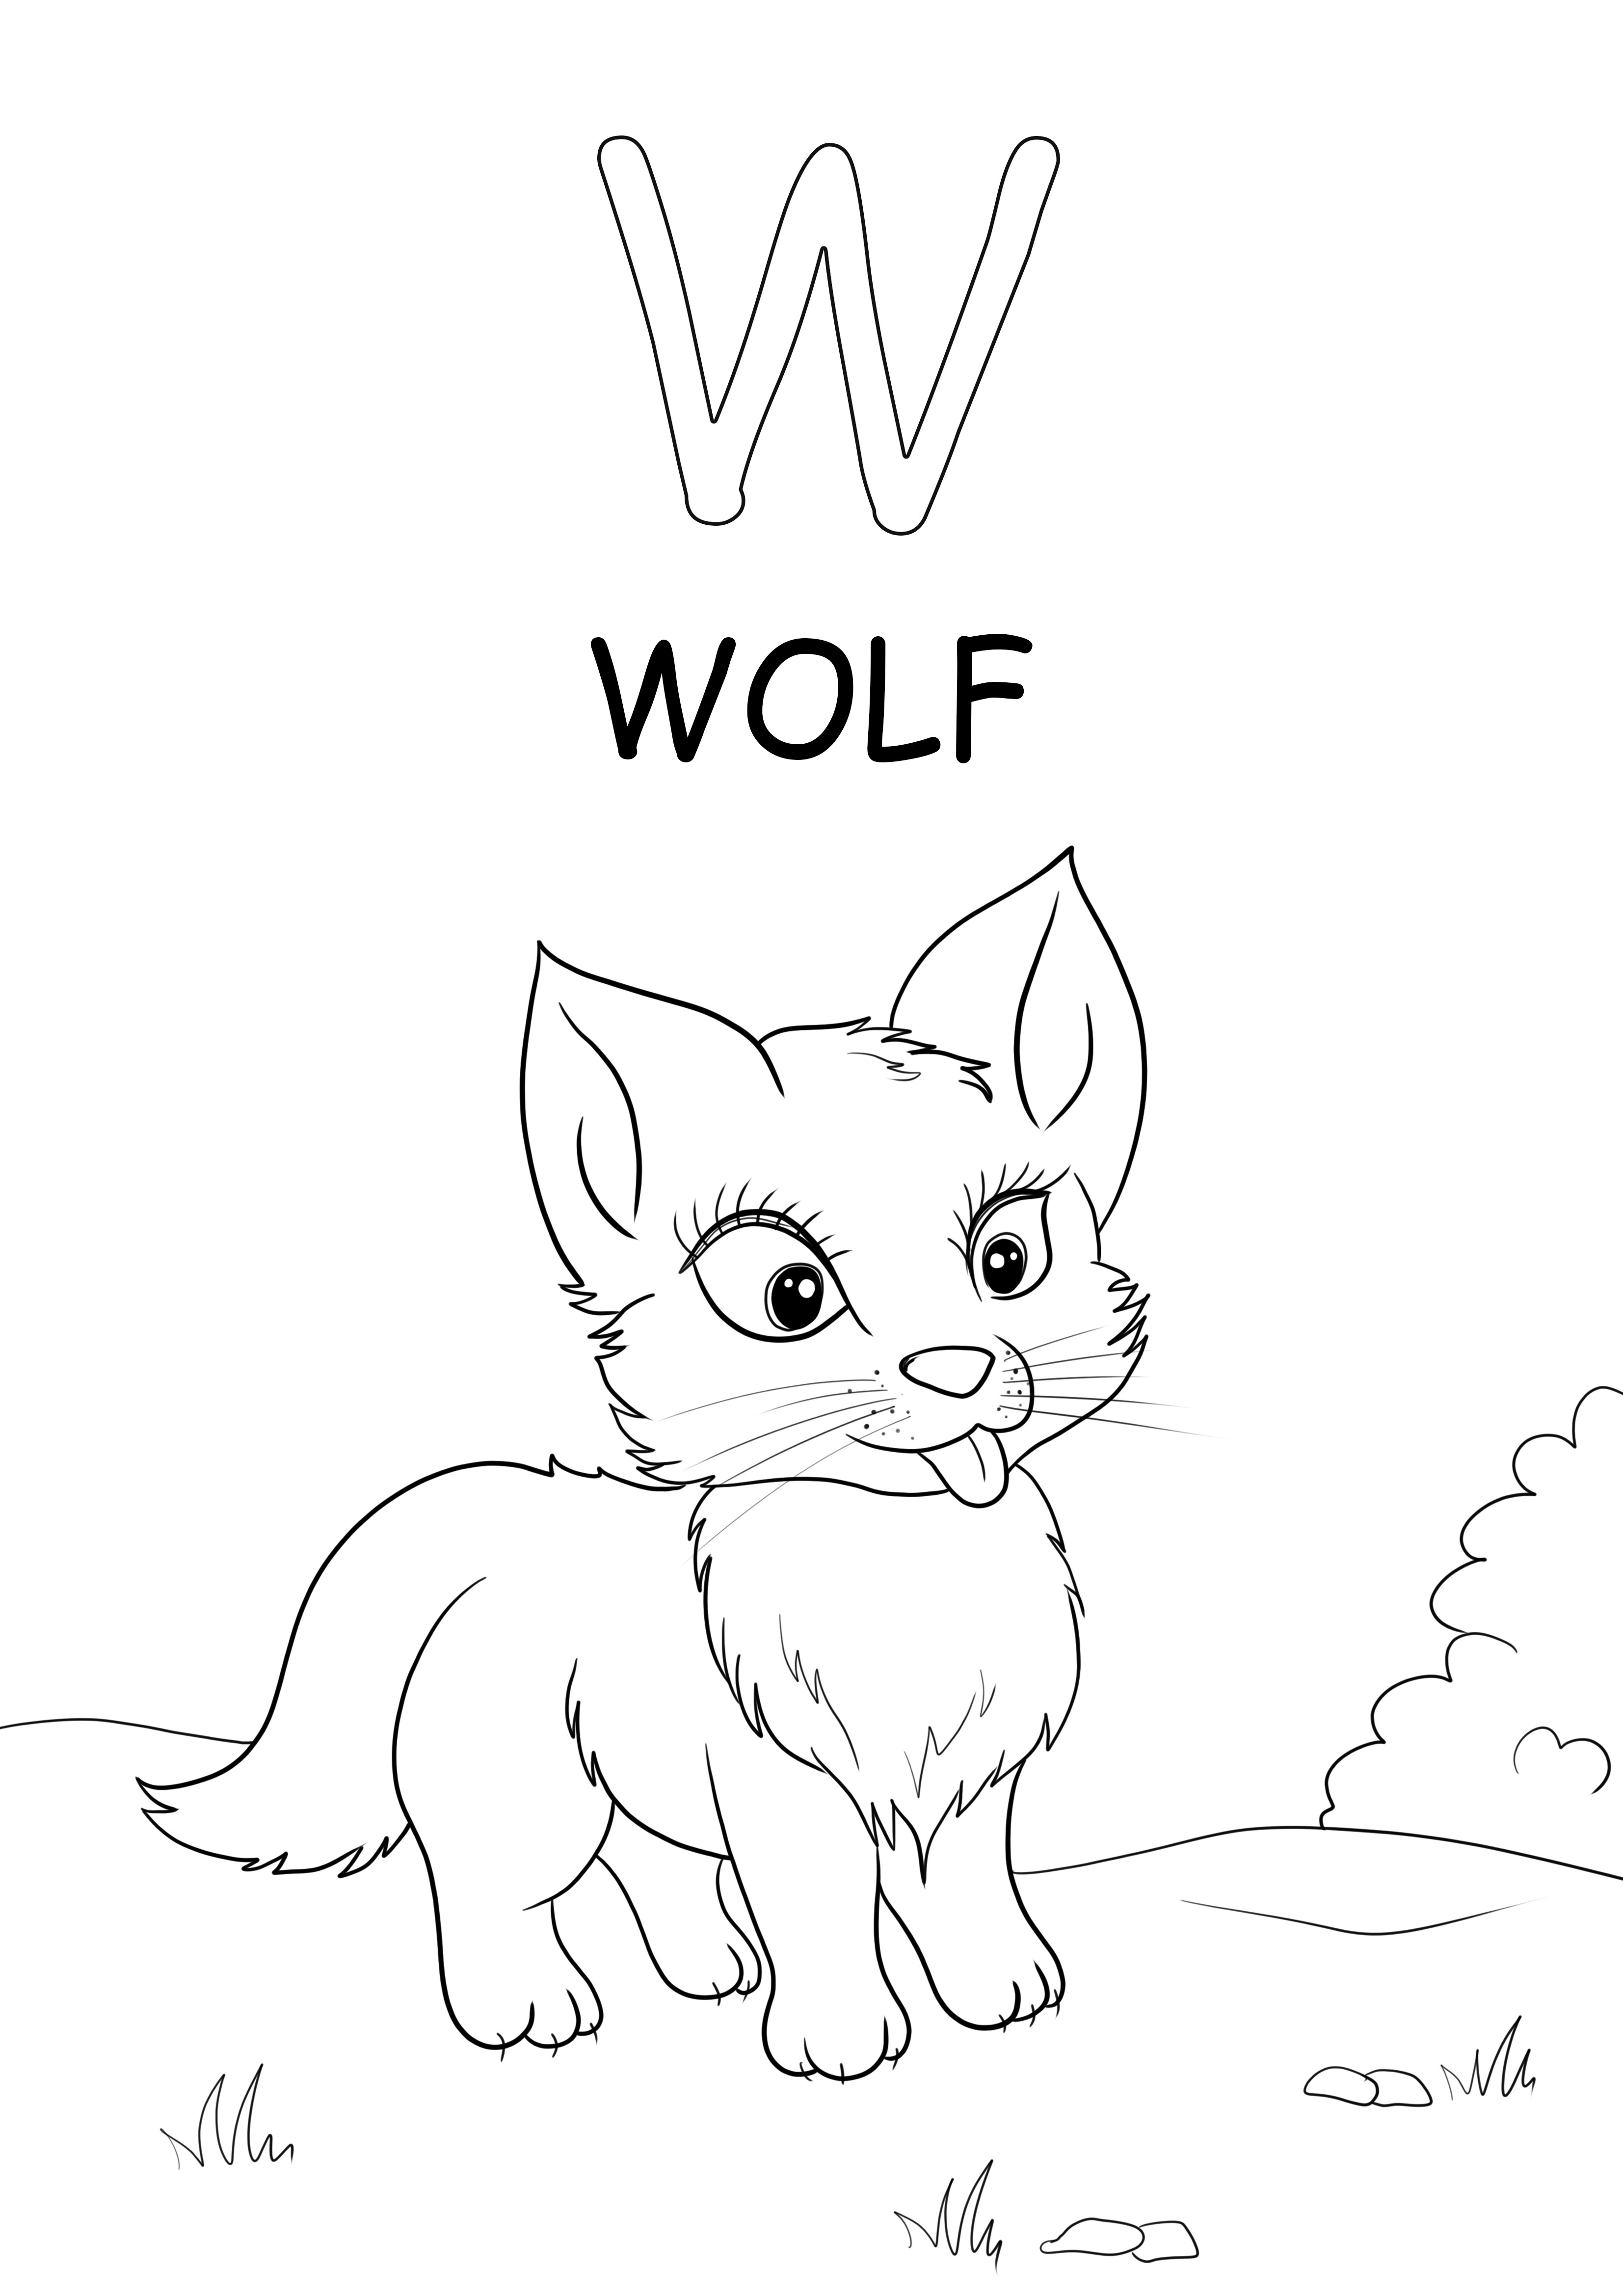 La parola maiuscola-lupo inizia con la lettera W libera per colorare e stampare la pagina